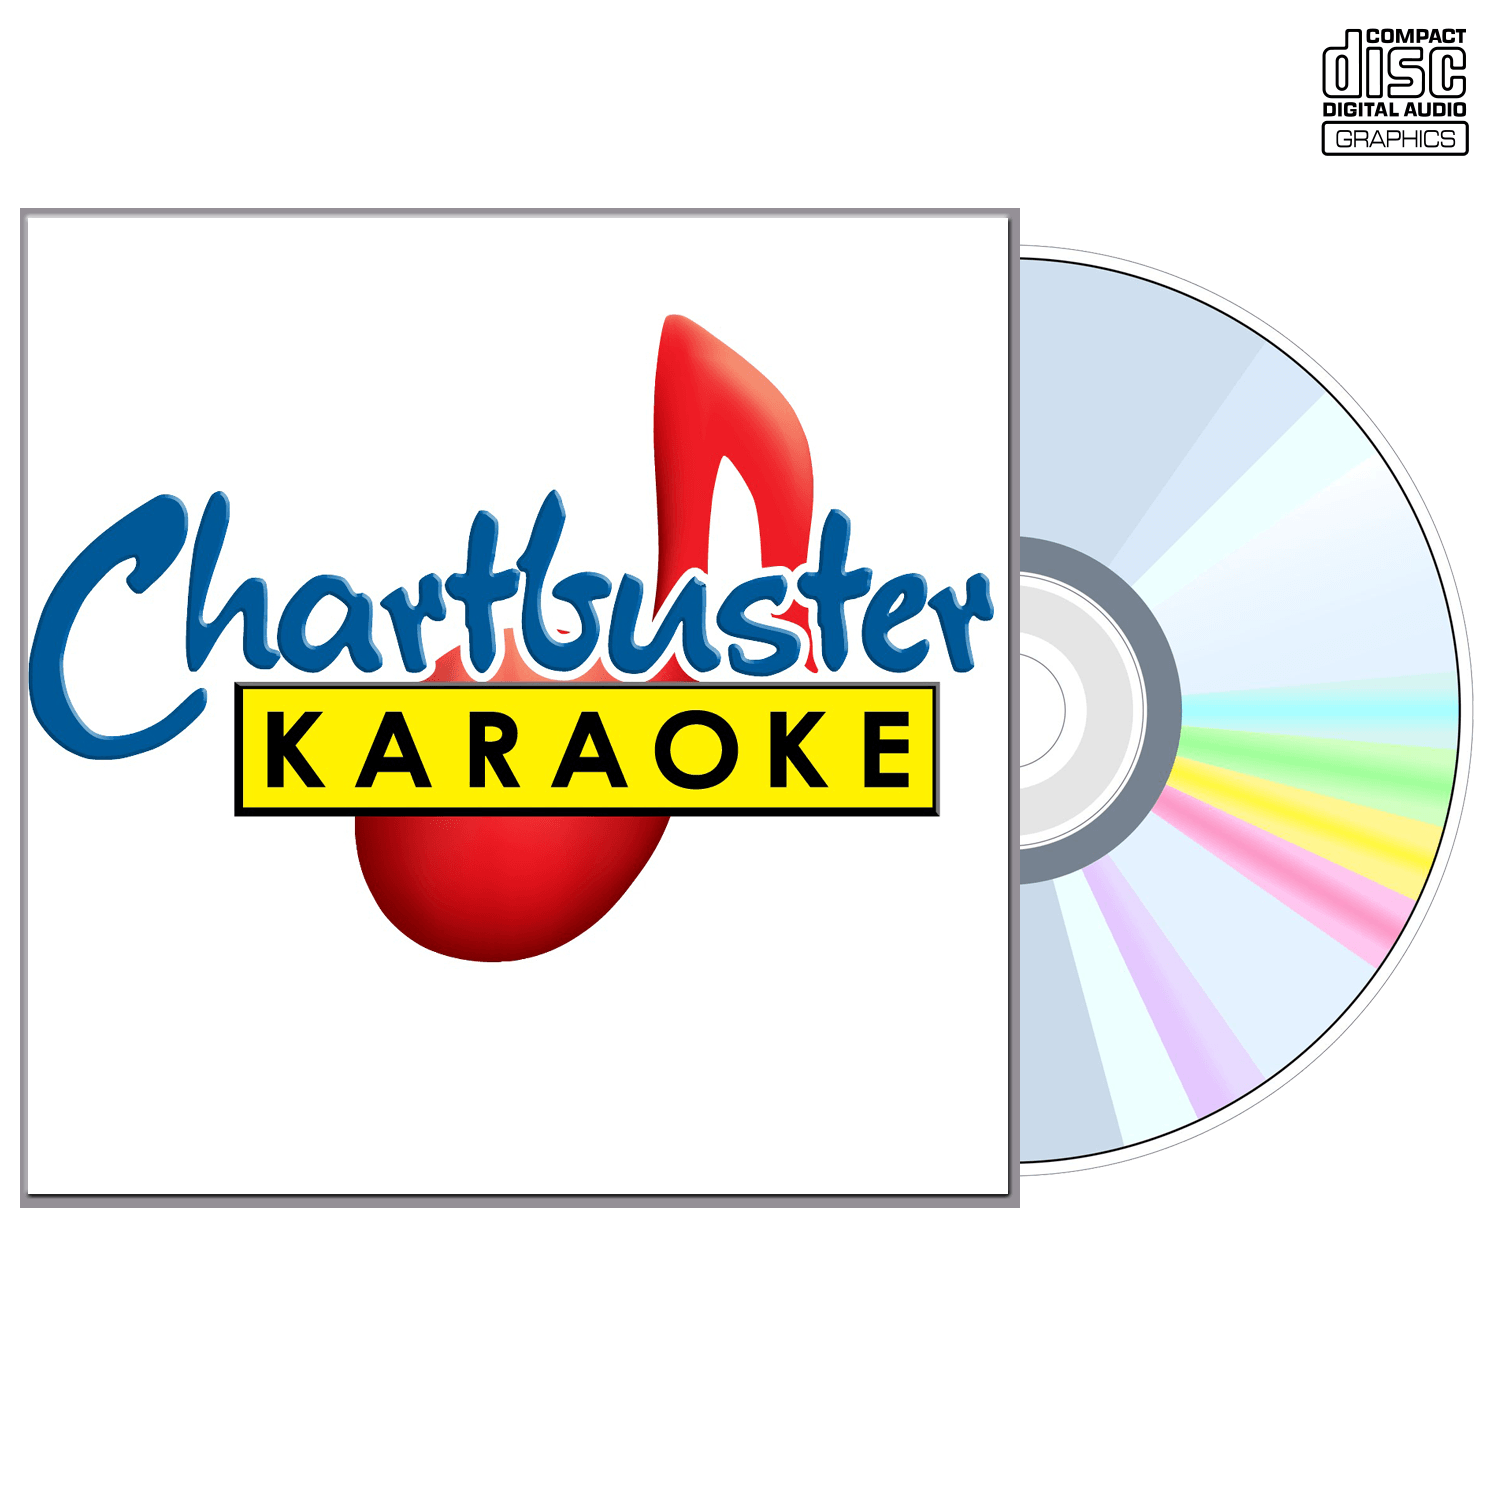 Tanya Tucker Vol 3 - CD+G - Chartbuster Karaoke - Karaoke Home Entertainment